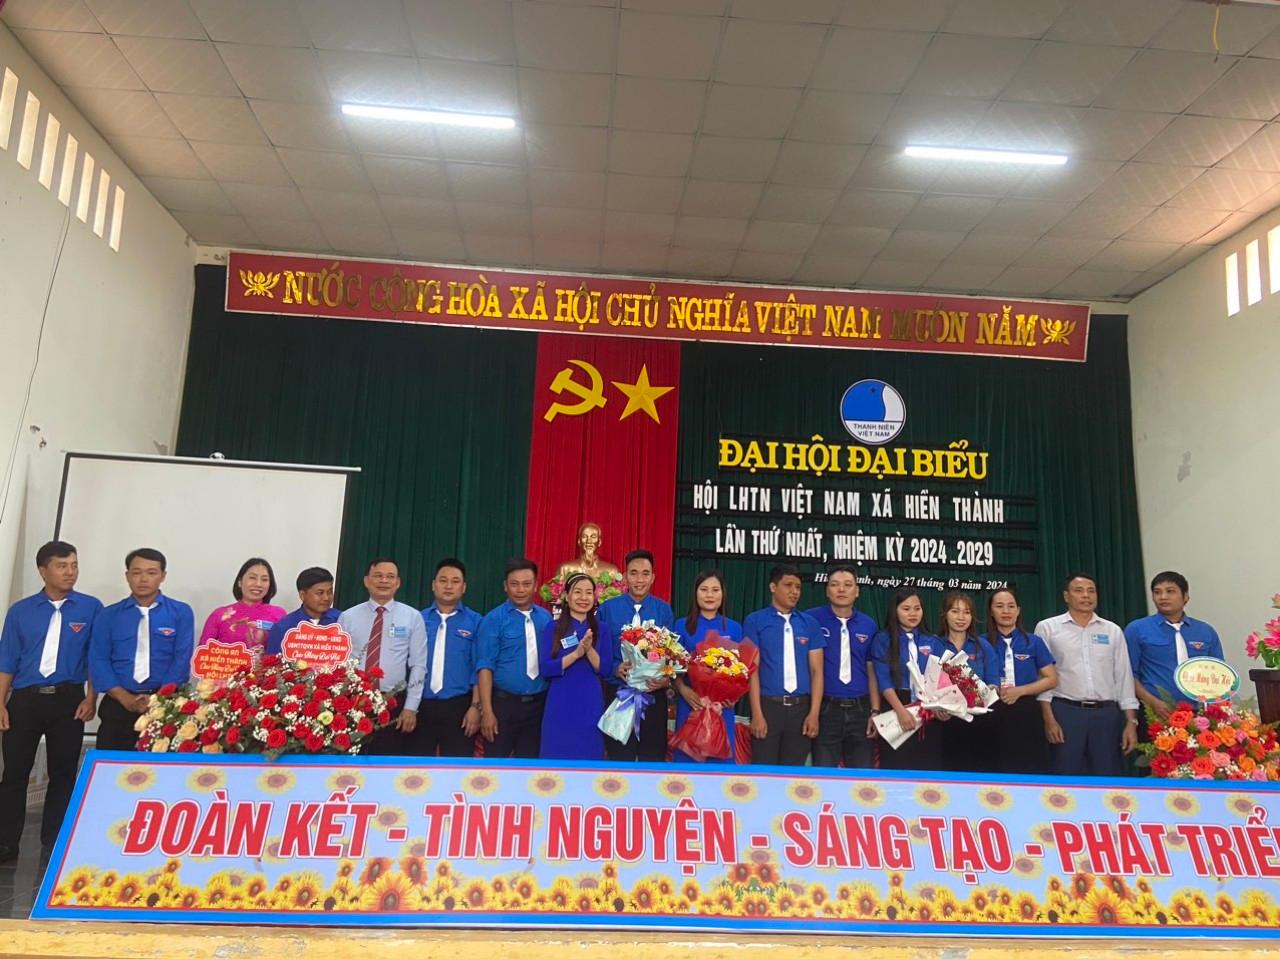 Đại hội đại biểu Hội LHTN Việt Nam xã Hiền Thành lần thứ nhất nhiệm kỳ 2024 - 2029